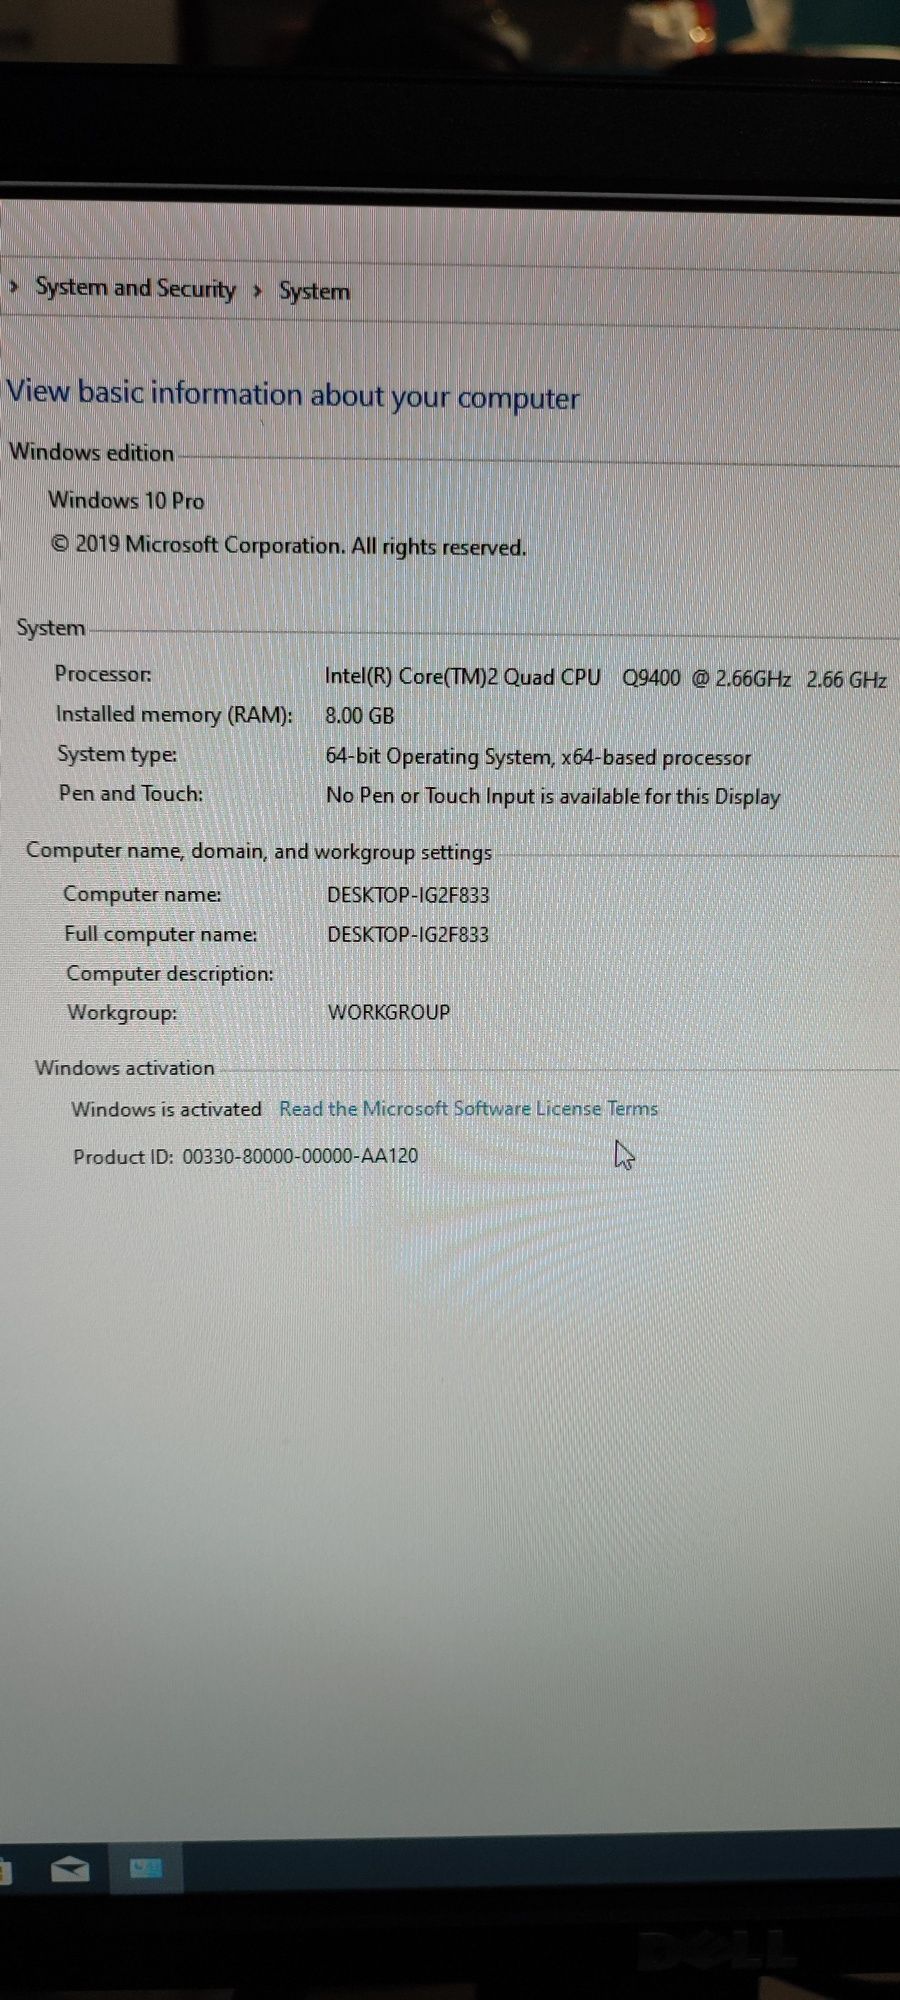 Unitate PC completa plus monitor și placa audio dedicata.